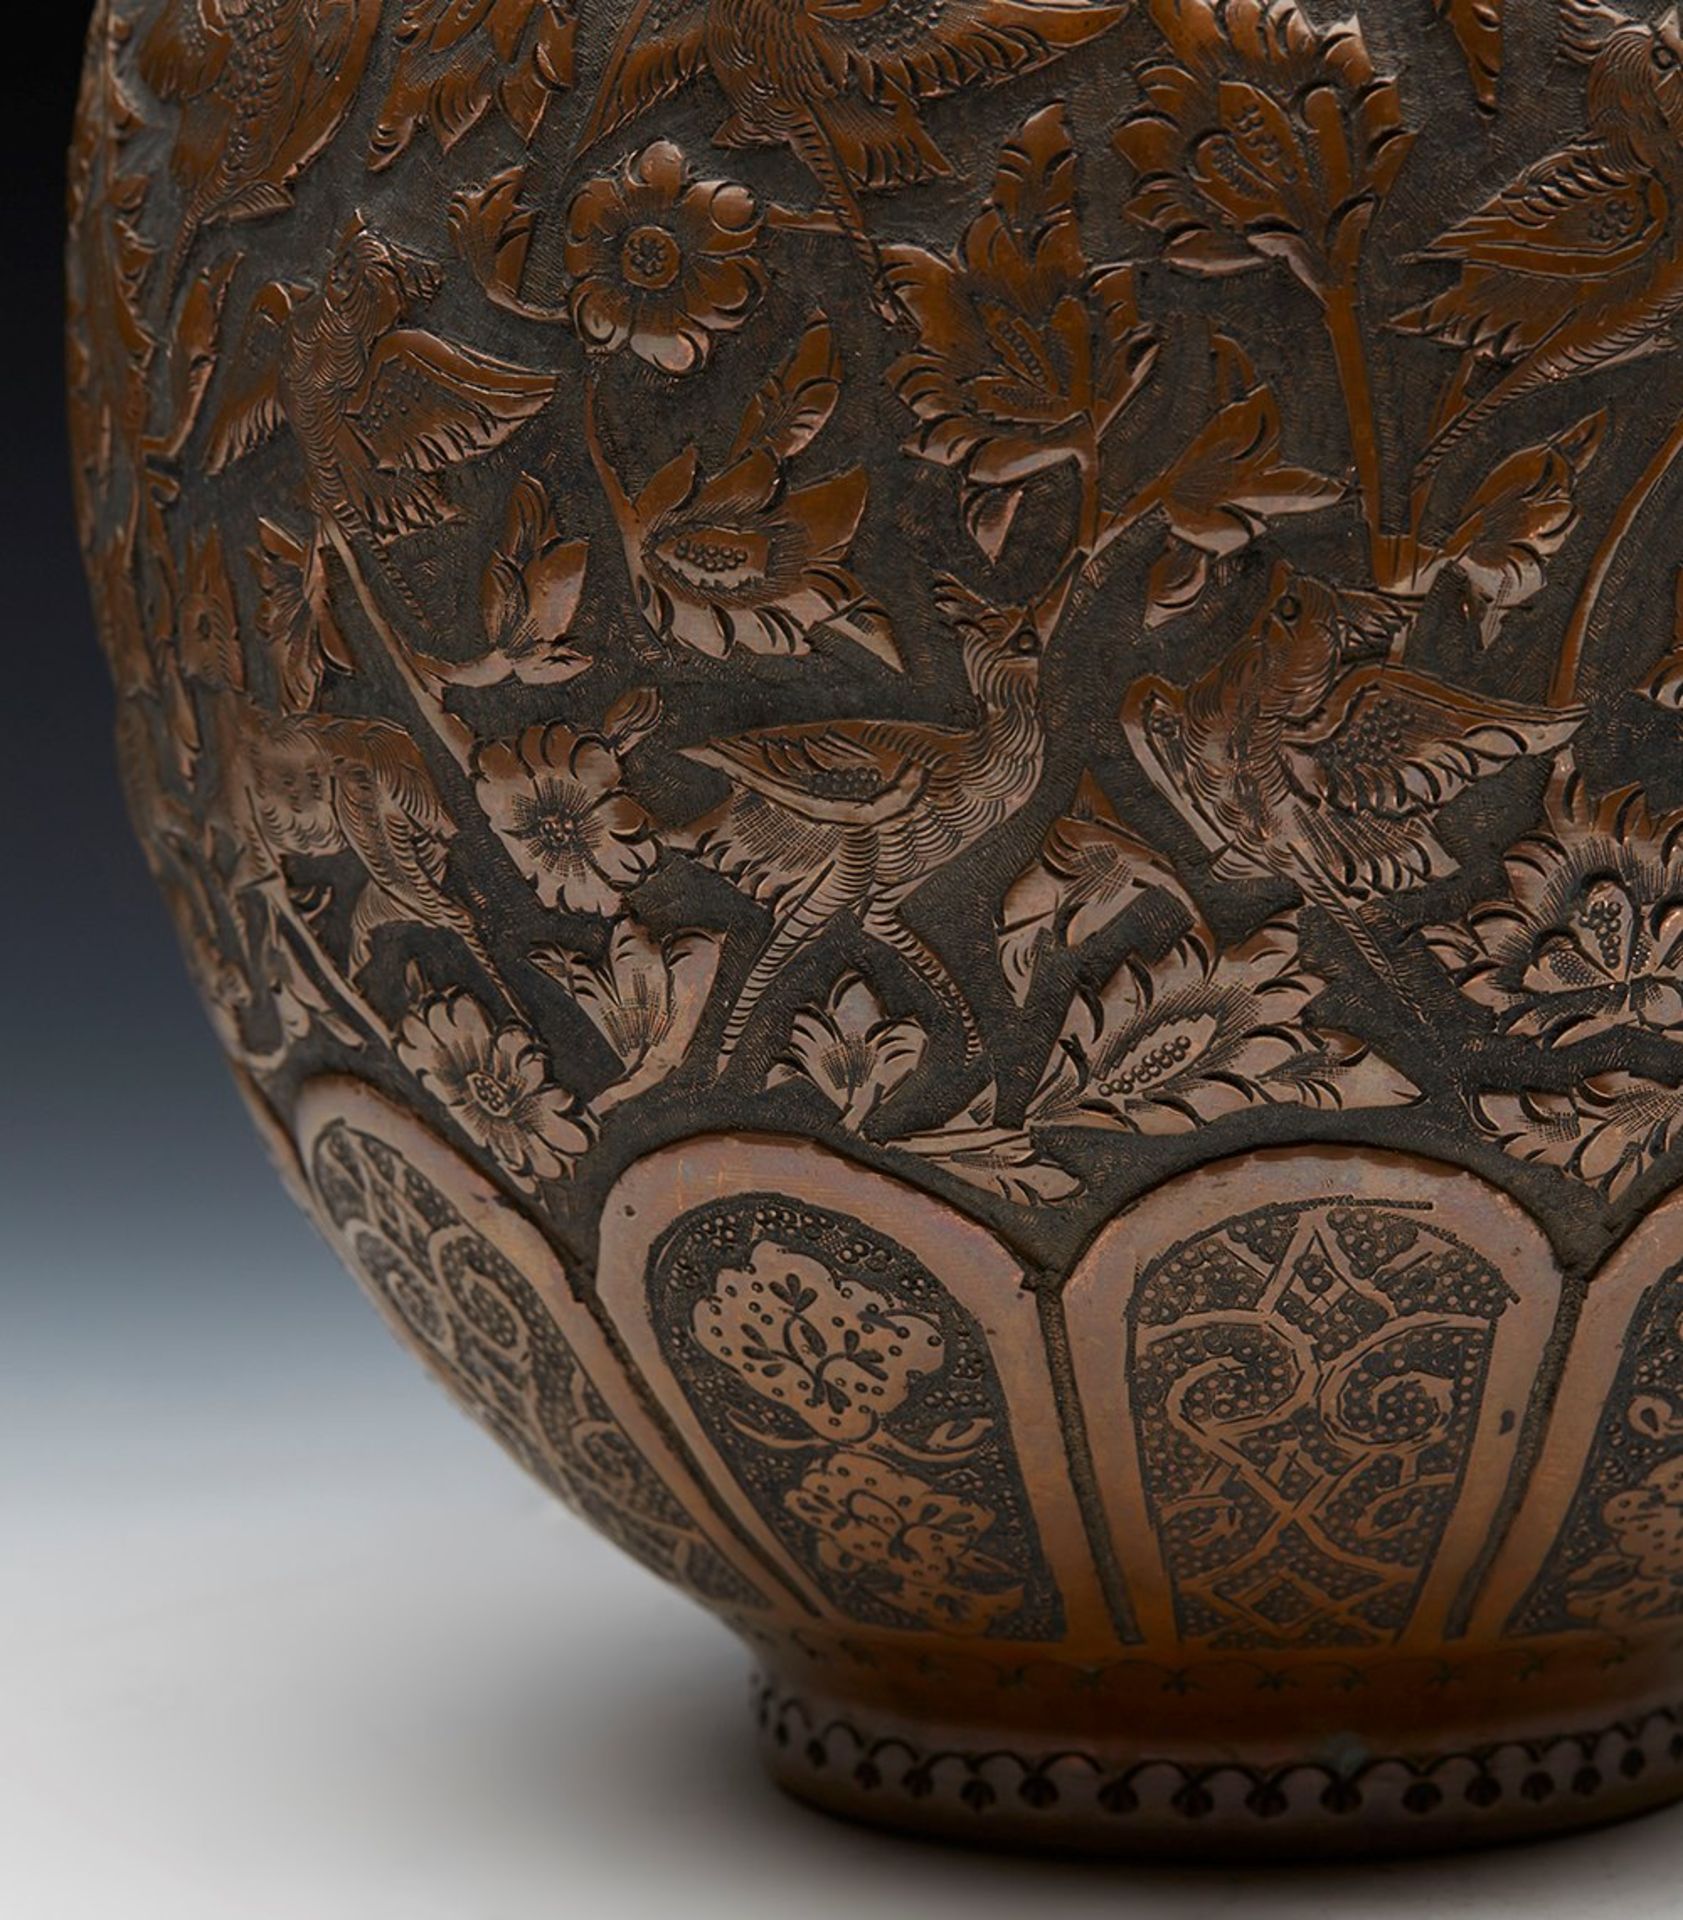 Antique Persian Copper Vase With Birds & Animals 19Th C. - Bild 3 aus 8